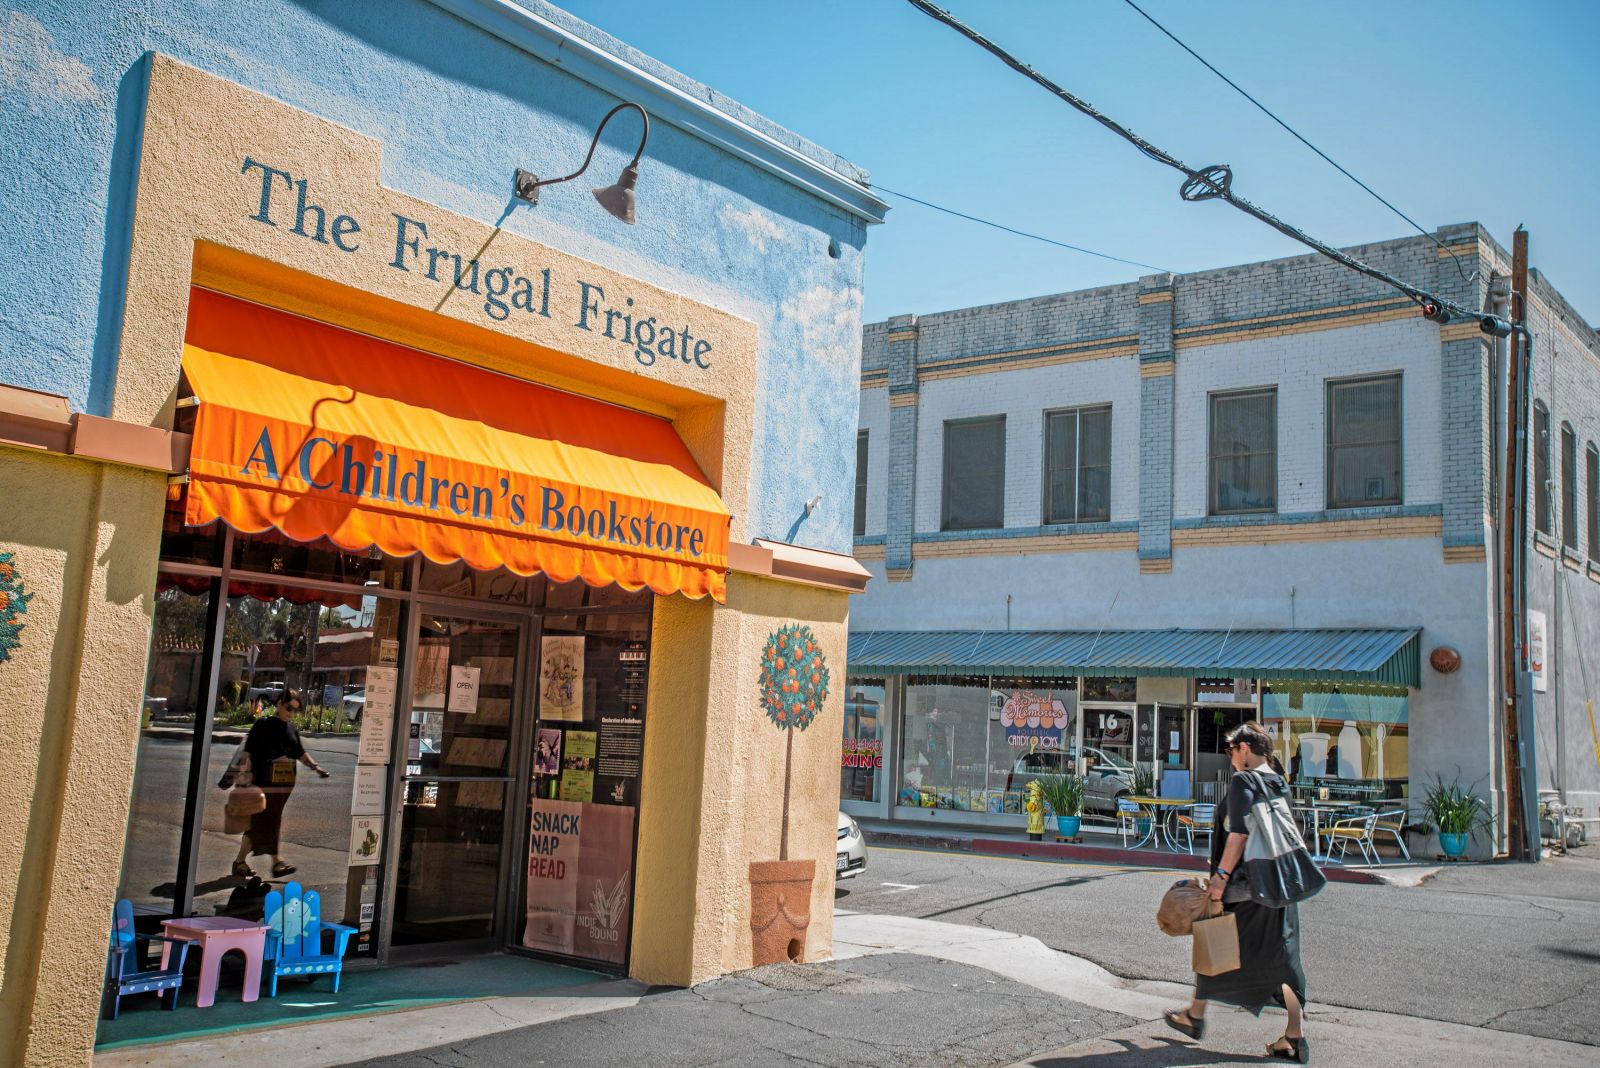 The Frugal Frigate, A Children’s Bookstore